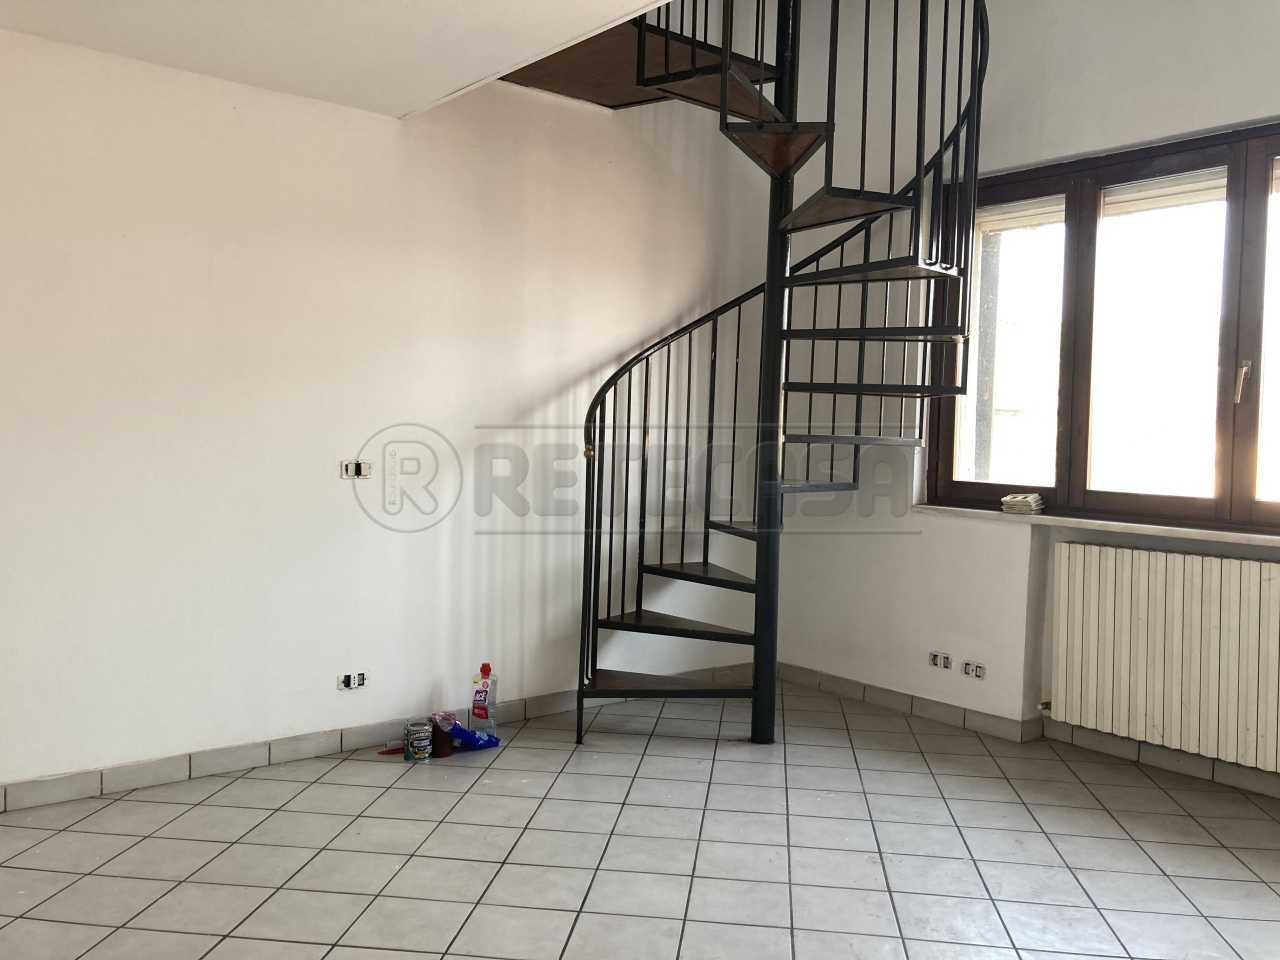 Appartamento in vendita a Chieve, 1 locali, prezzo € 42.000 | PortaleAgenzieImmobiliari.it